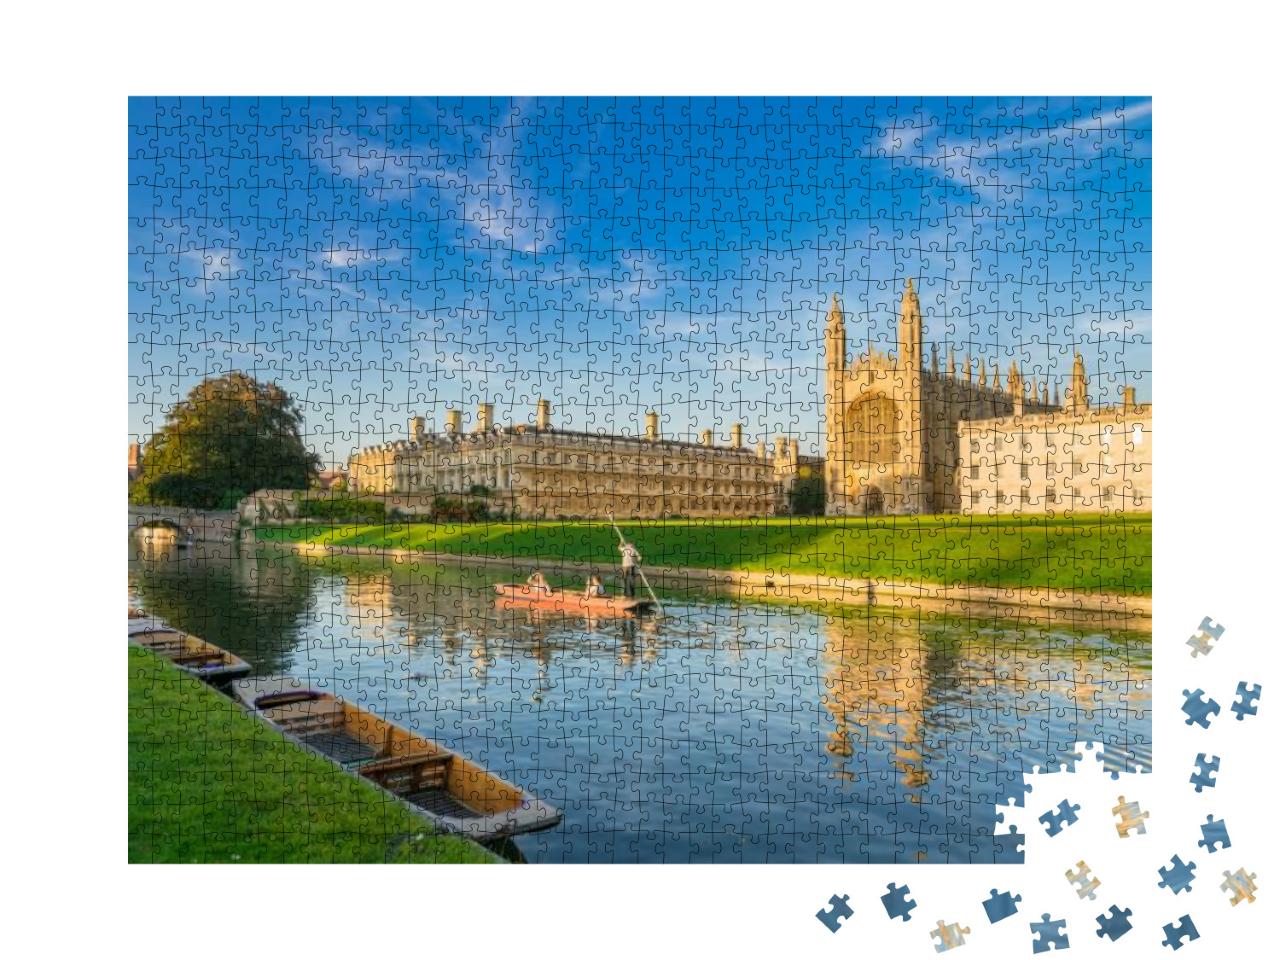 Puzzle 1000 Teile „College in Cambridge, England“